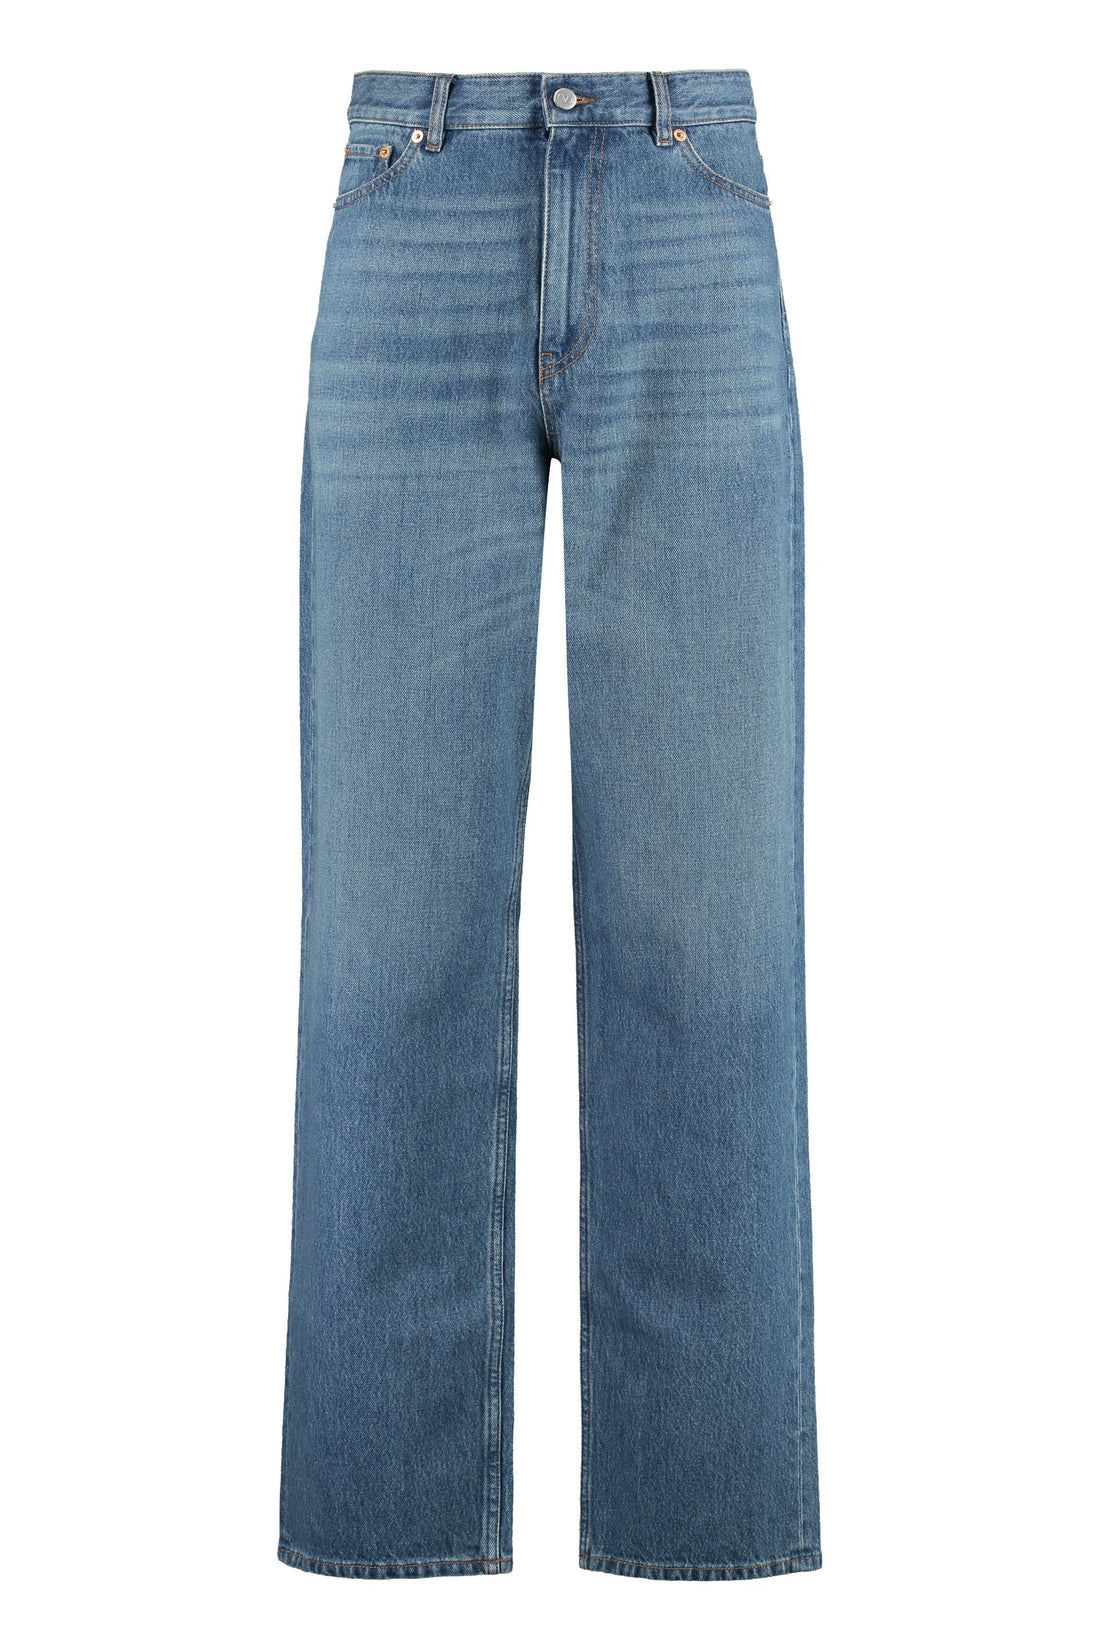 Valentino-OUTLET-SALE-Wide-leg jeans-ARCHIVIST